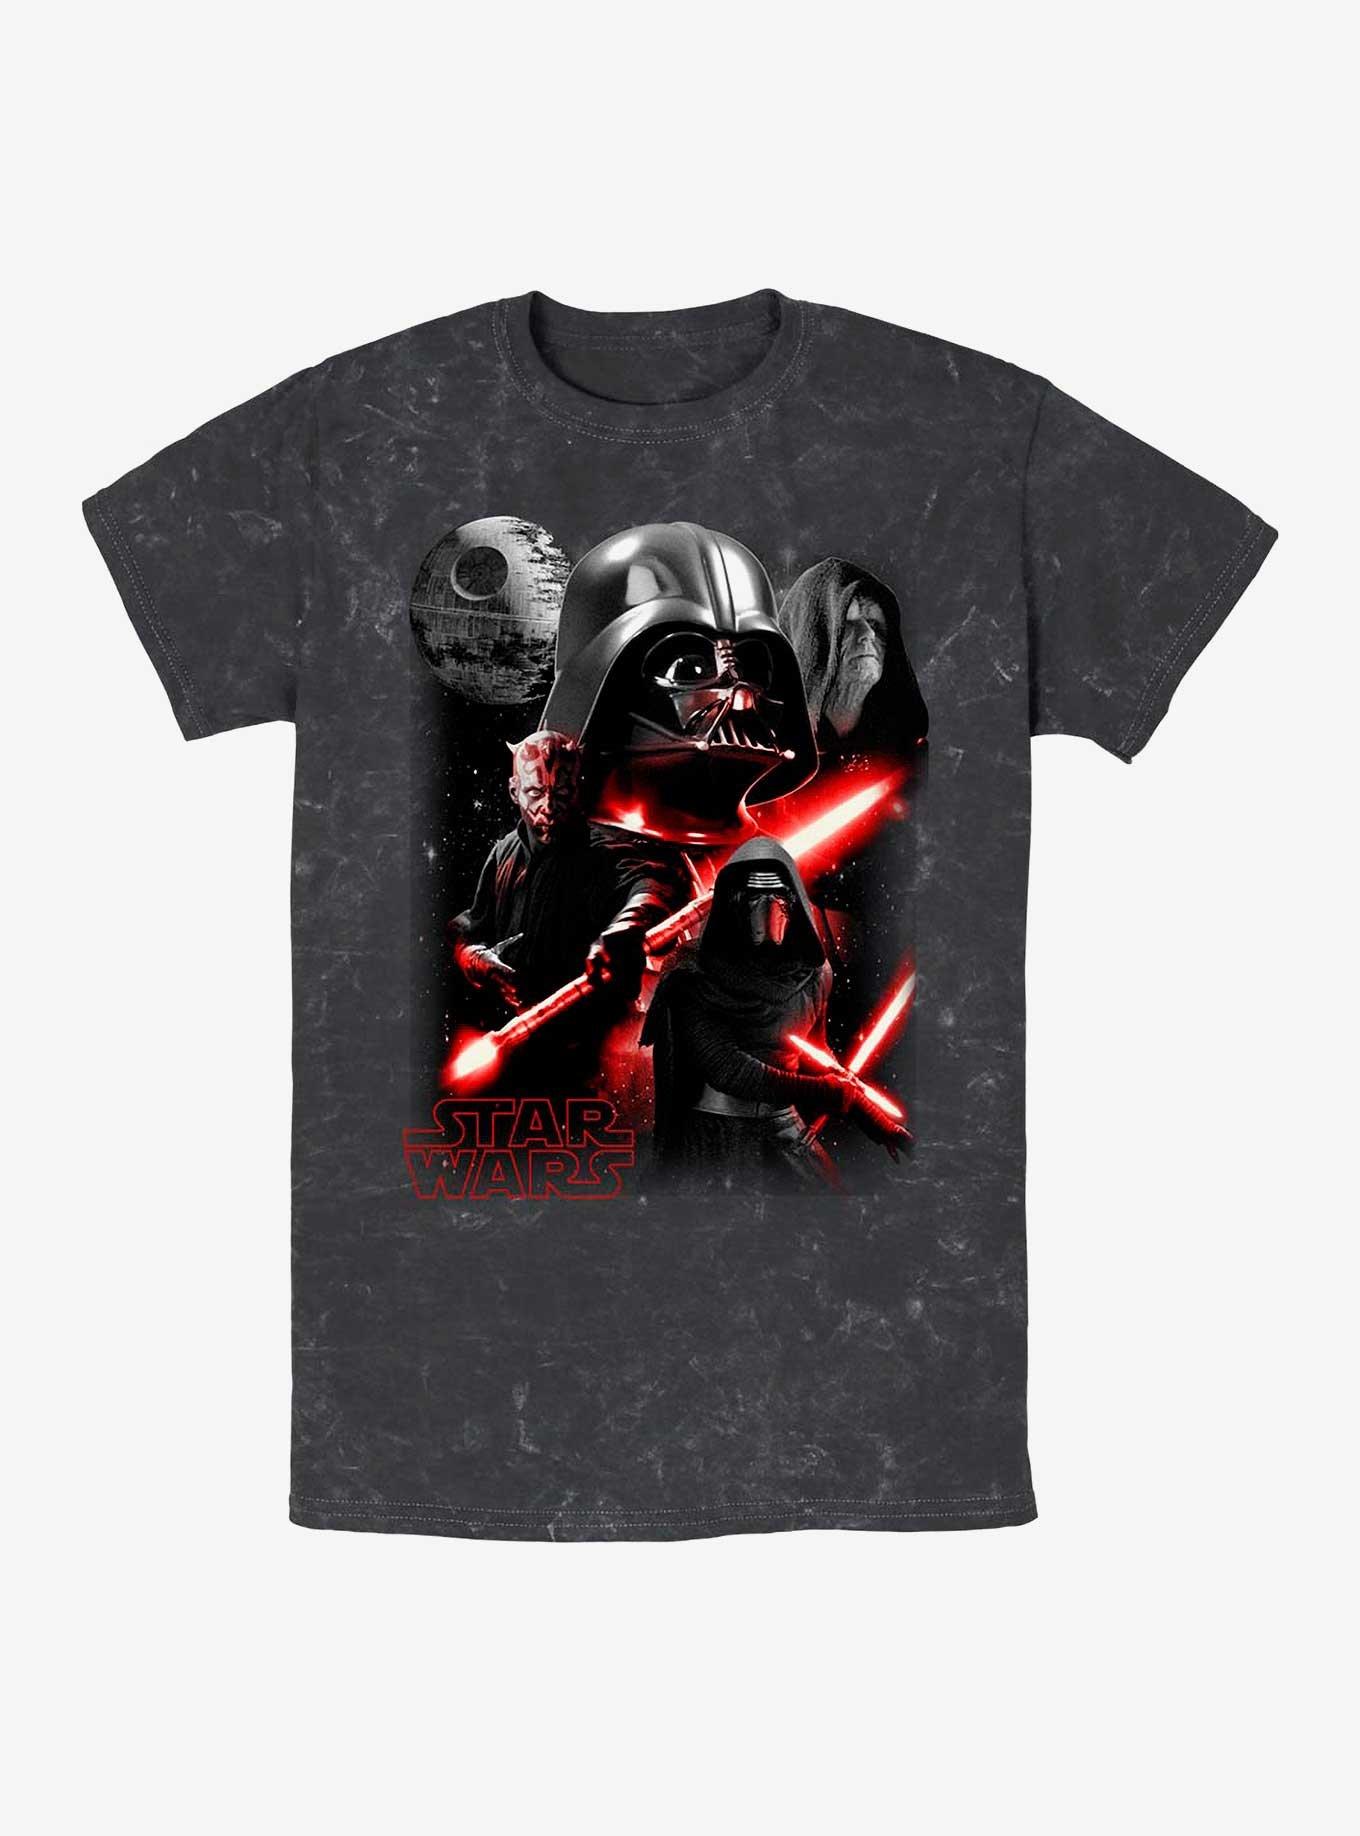 Star Wars Dark Forces Mineral Wash T-Shirt, BLACK, hi-res